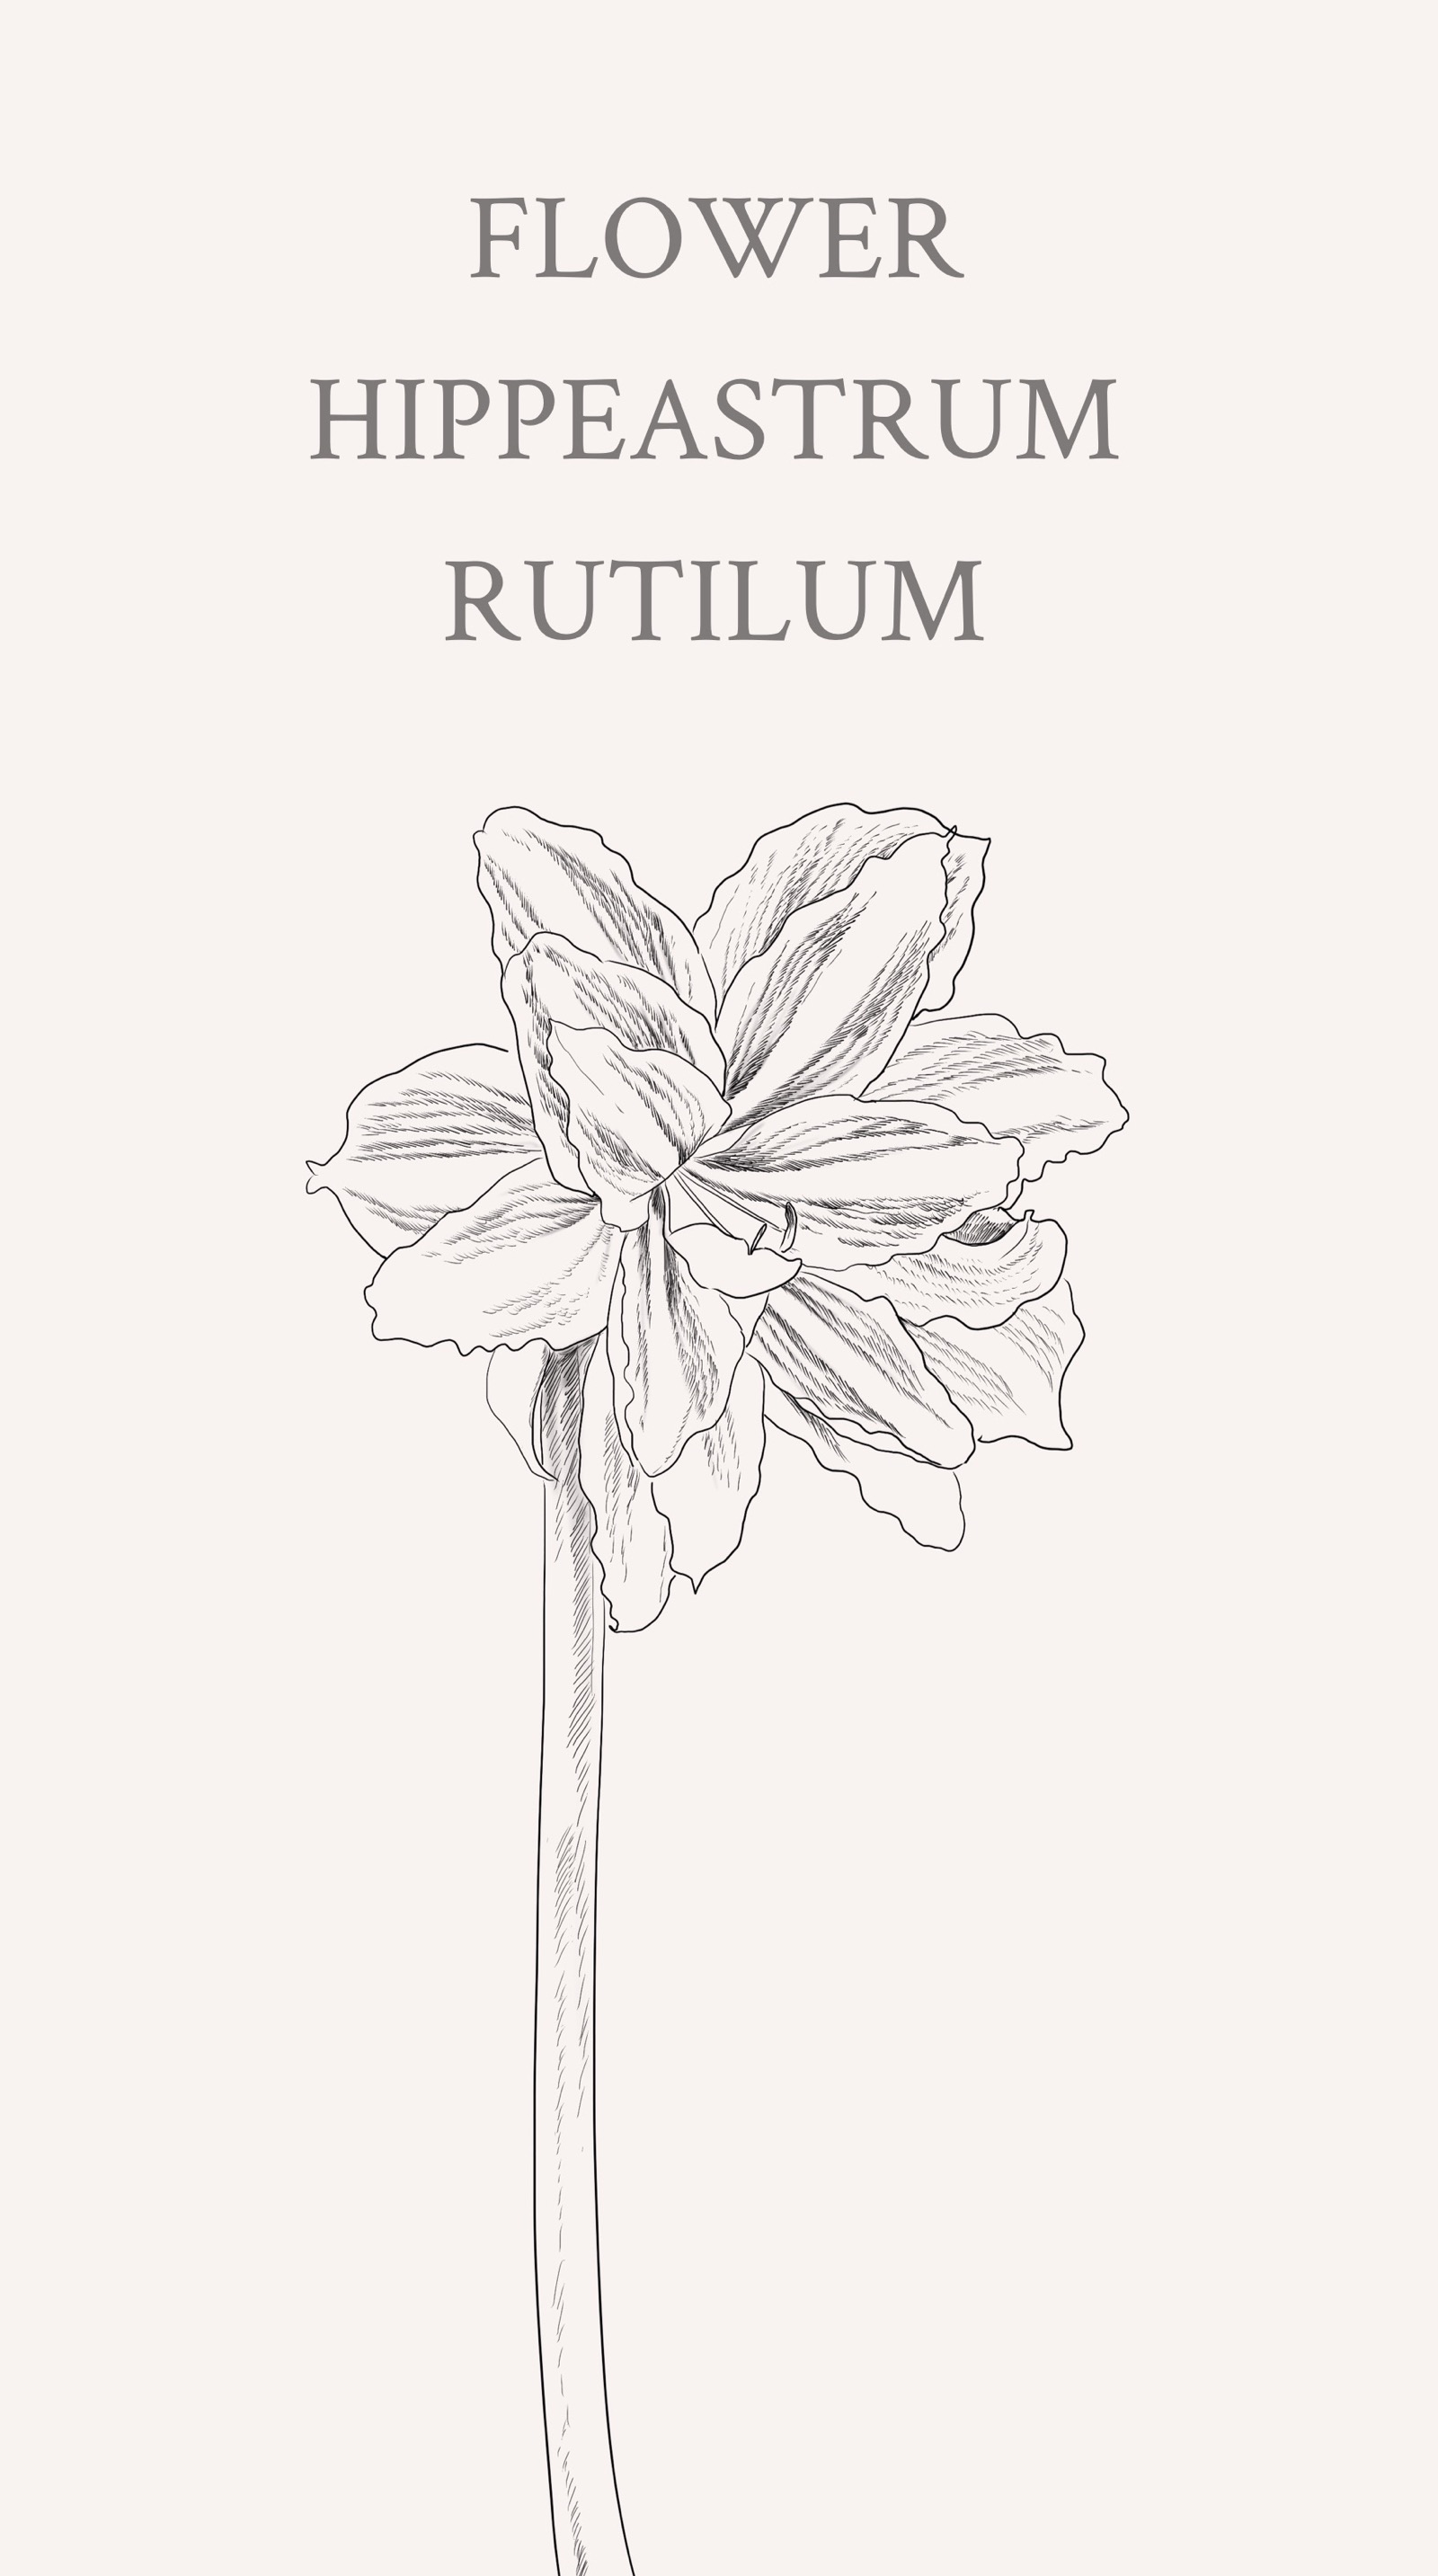 朱顶红(学名:hippeastrum rutilum)又名红花莲(海南植物志),华胄兰